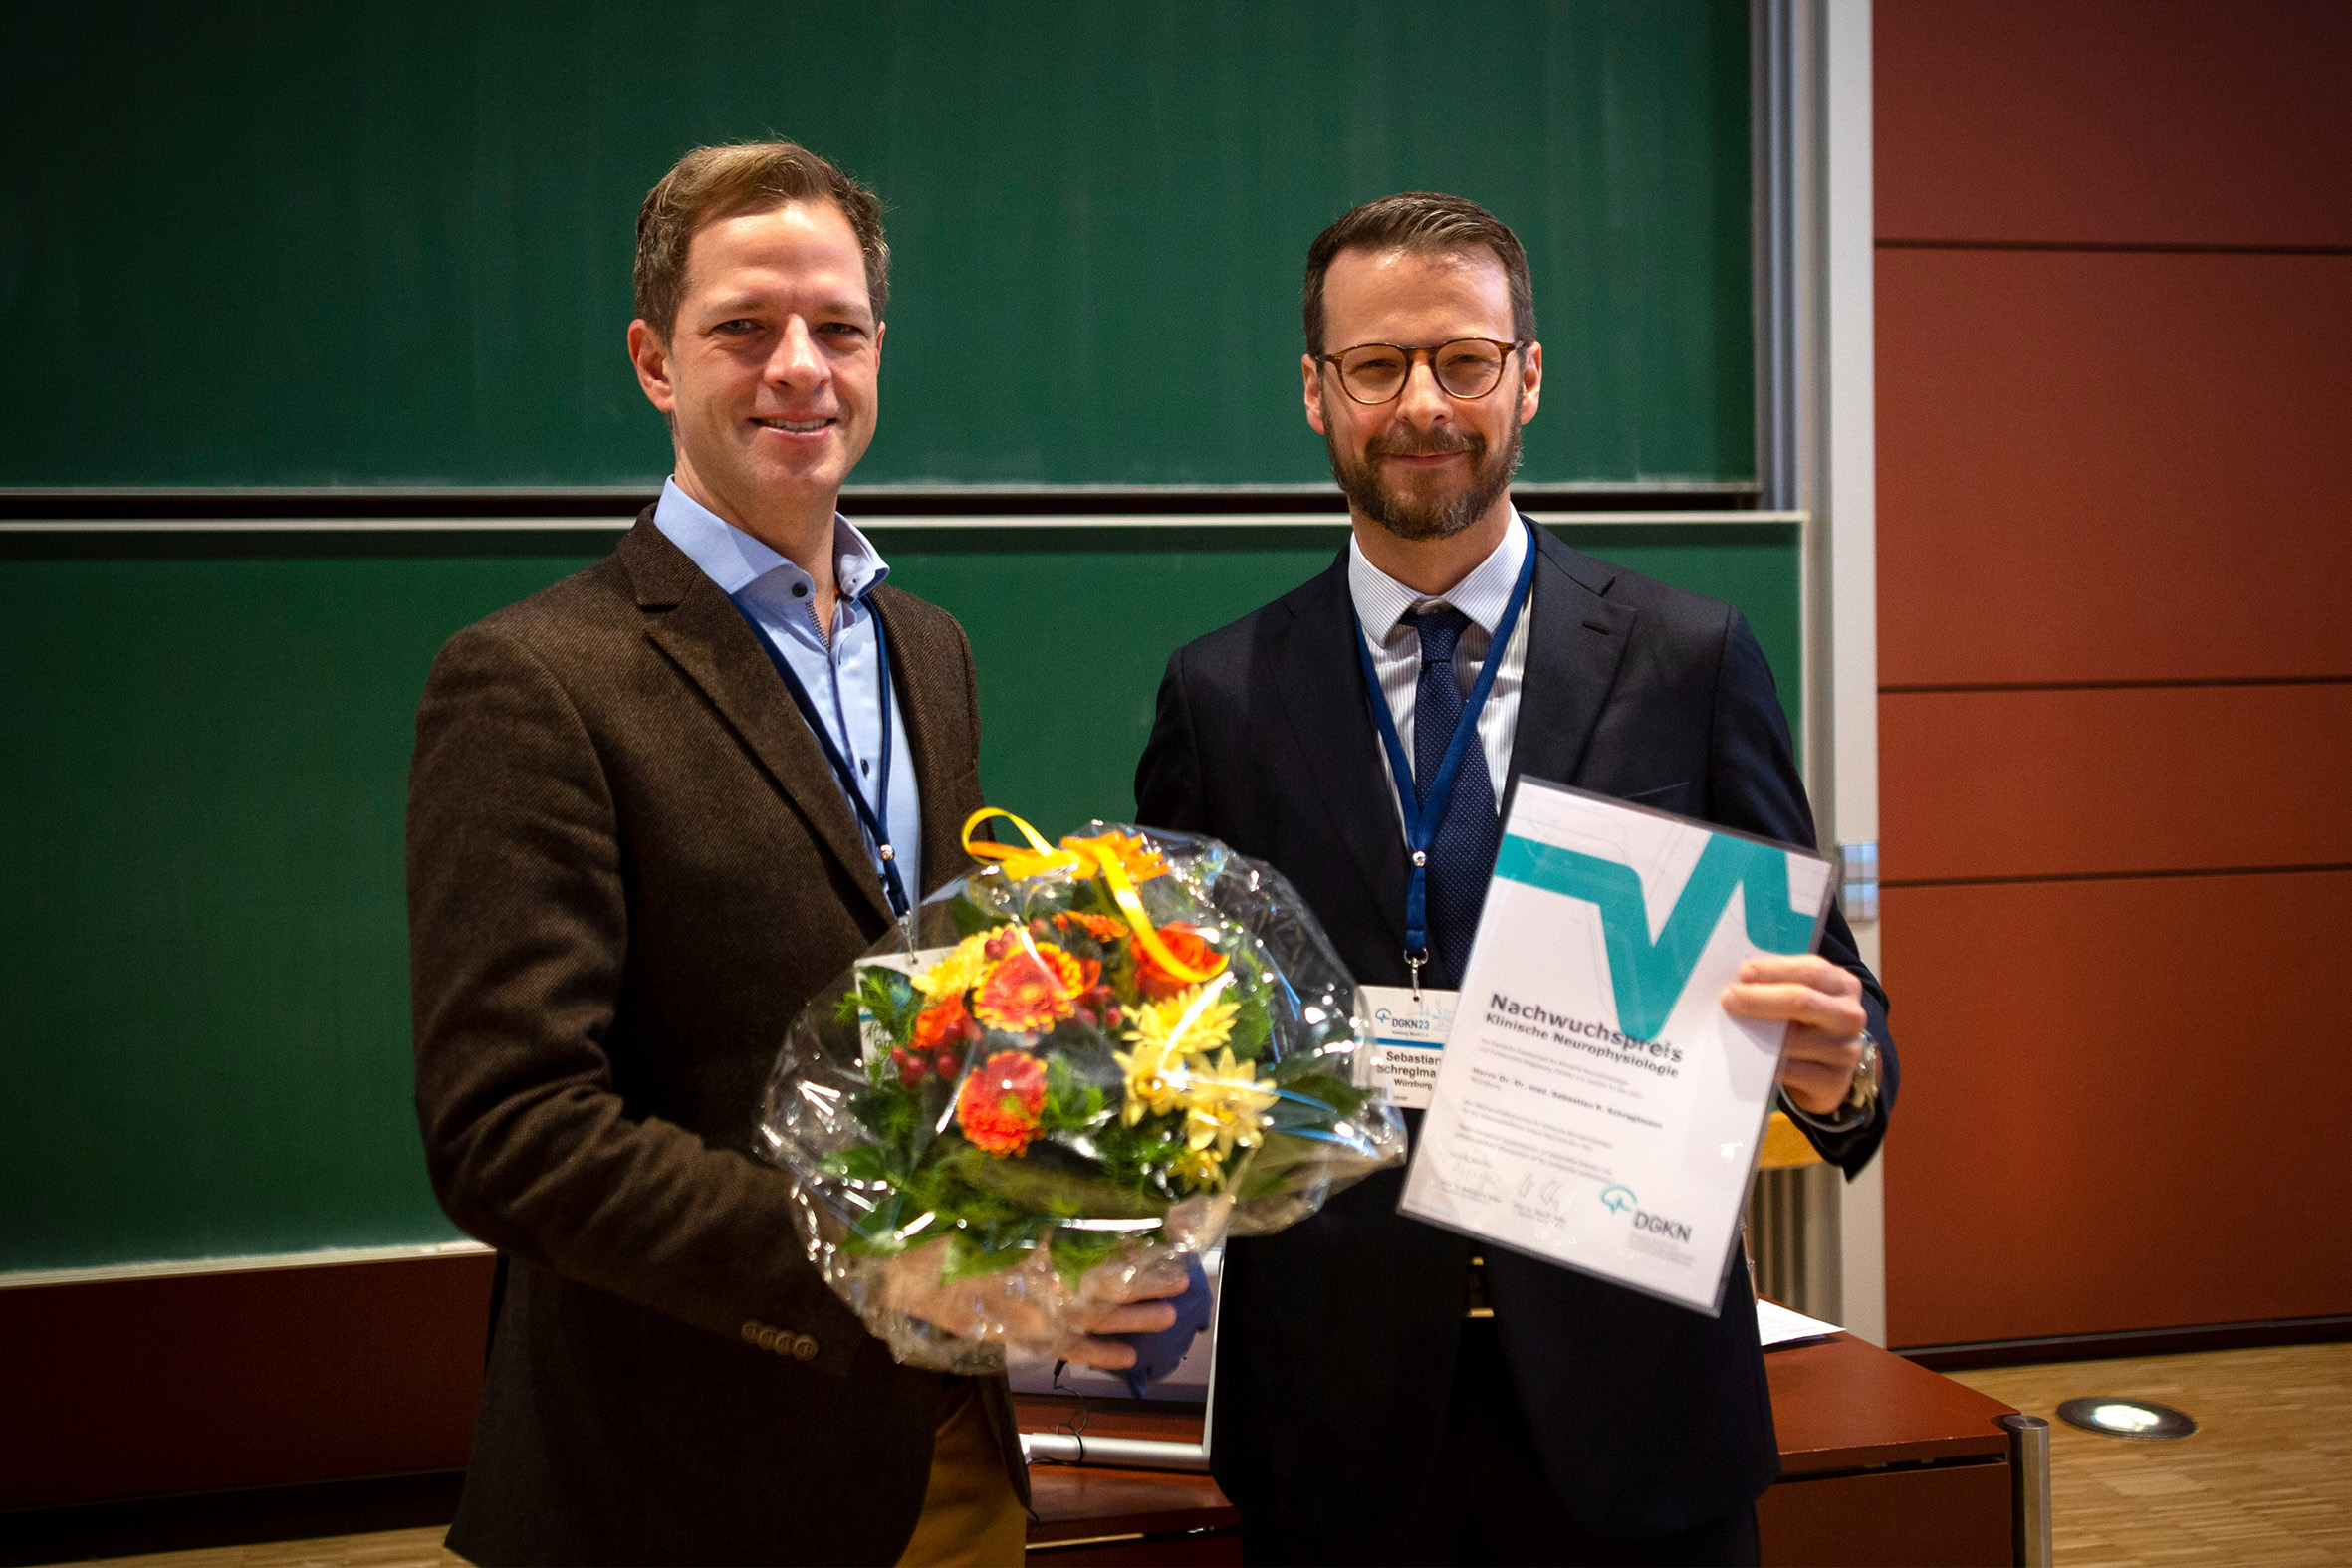 Links im Bild ist Prof. Christian Grefkes-Hermann mit Blumenstrauß, rechts Dr. Sebastian Schreglmann, der die Urkunde in den Händen hält. 